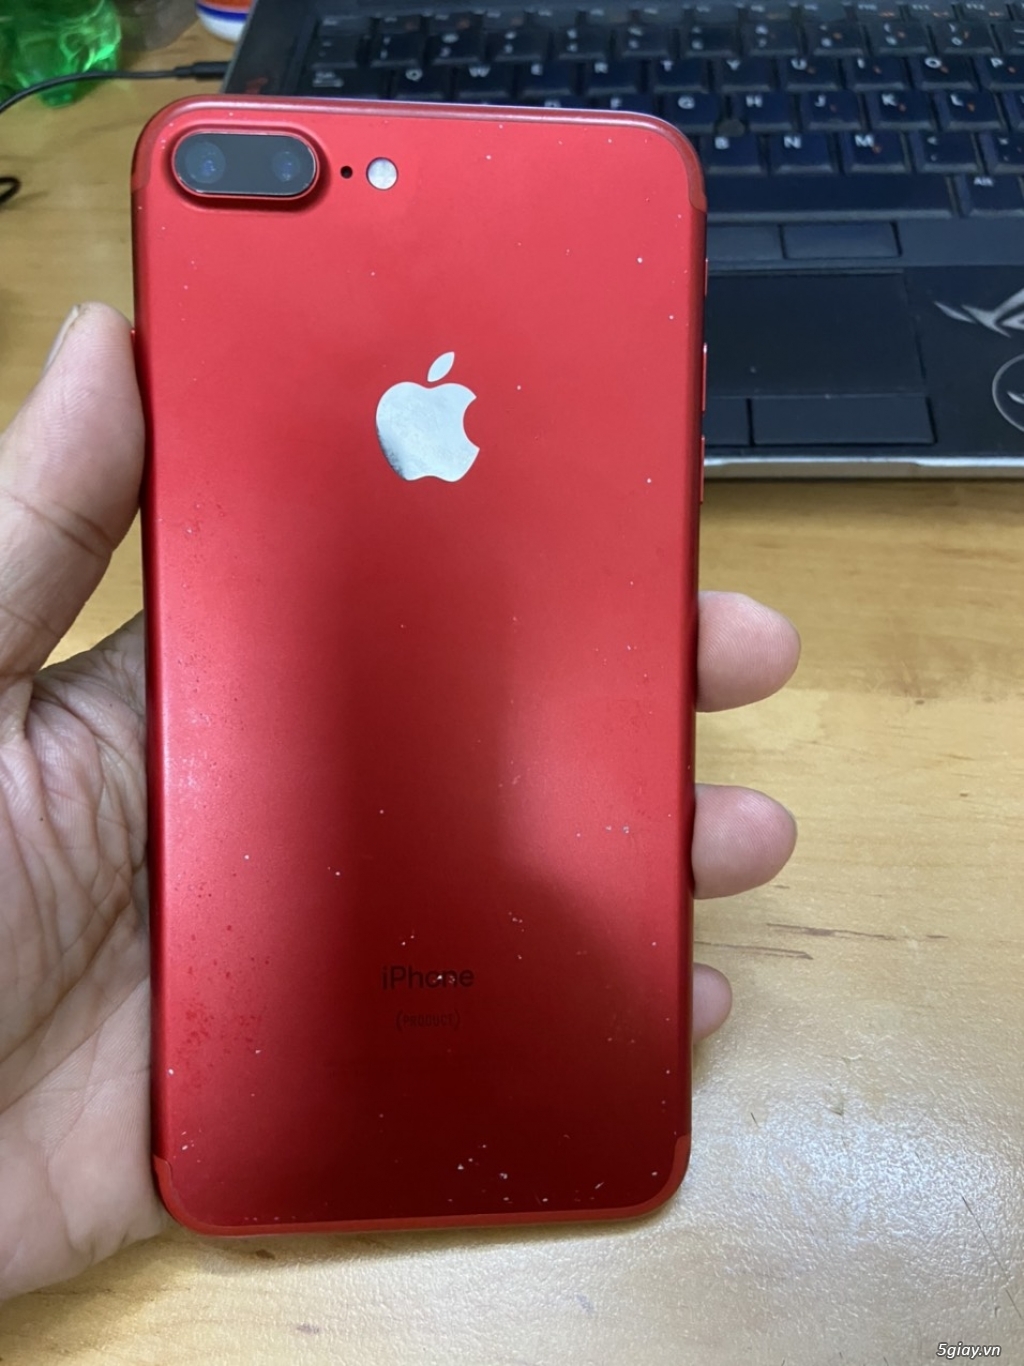 Apple iPhone 7 plus Đỏ Quốc tế ZP 128GB giá rẻ - 1